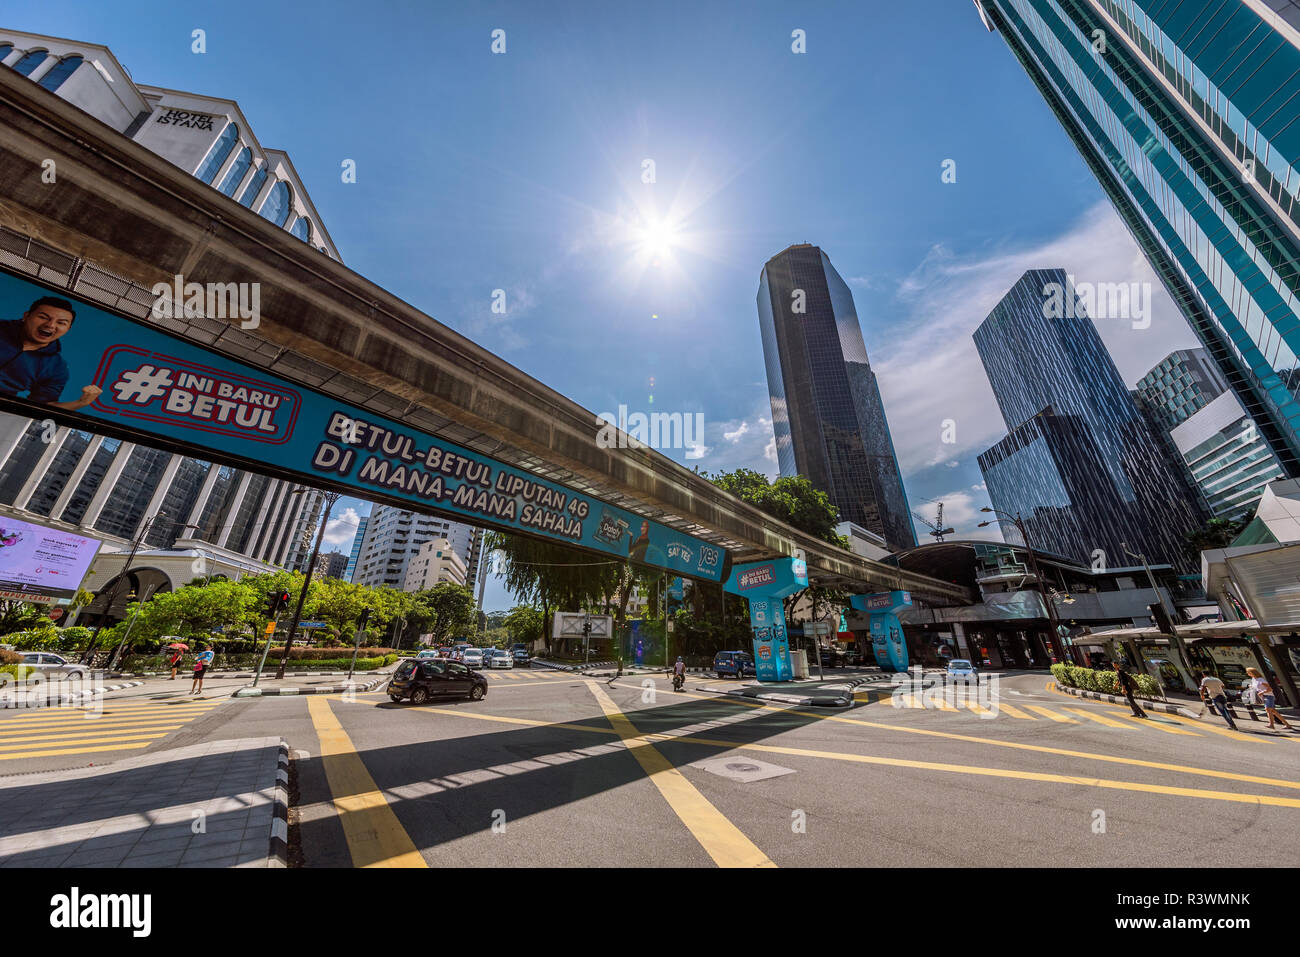 KUALA LUMPUR, Malesia - 25 Luglio: vista dei grattacieli e architettura moderna nella zona del centro cittadino sulla luglio 25, 2018 a Kuala Lumpur Foto Stock